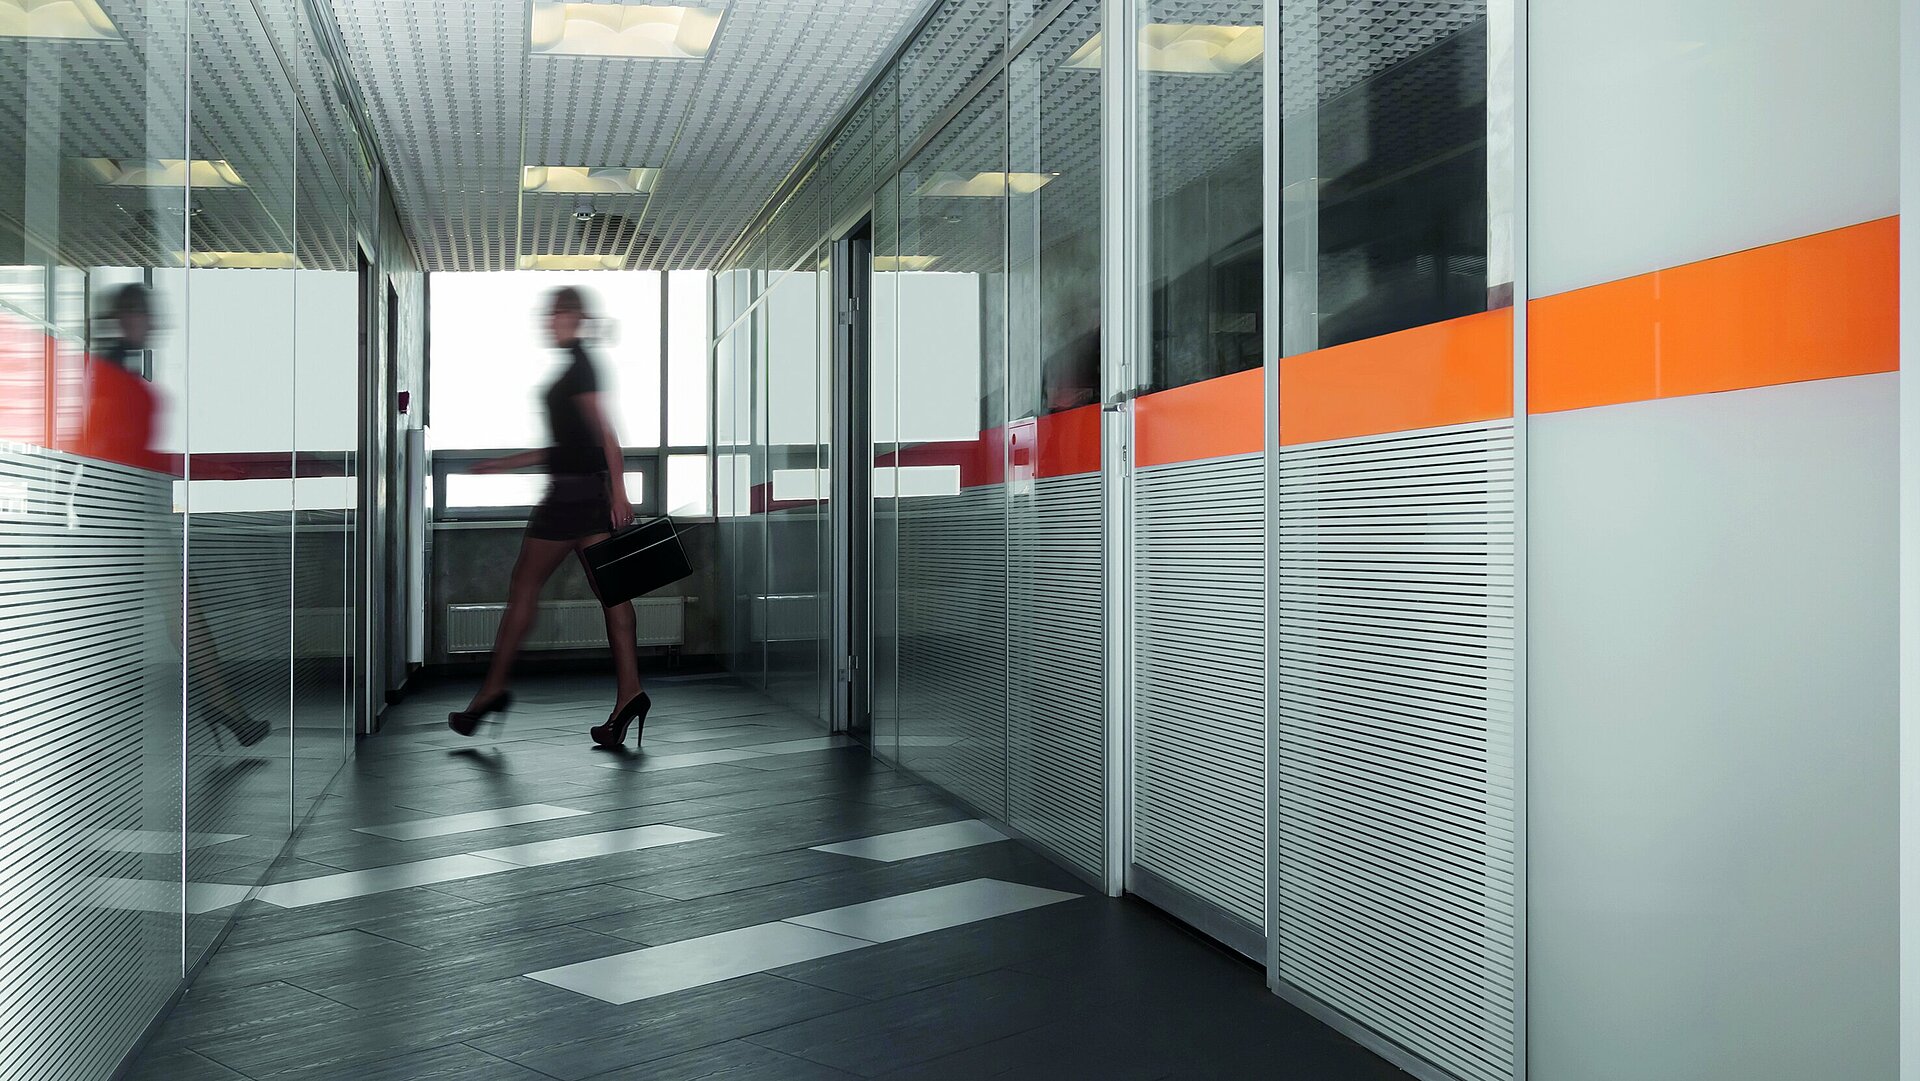 Büroflur mit Büroräumen aus Glaswänden und orangenem Glaslack Akzenten